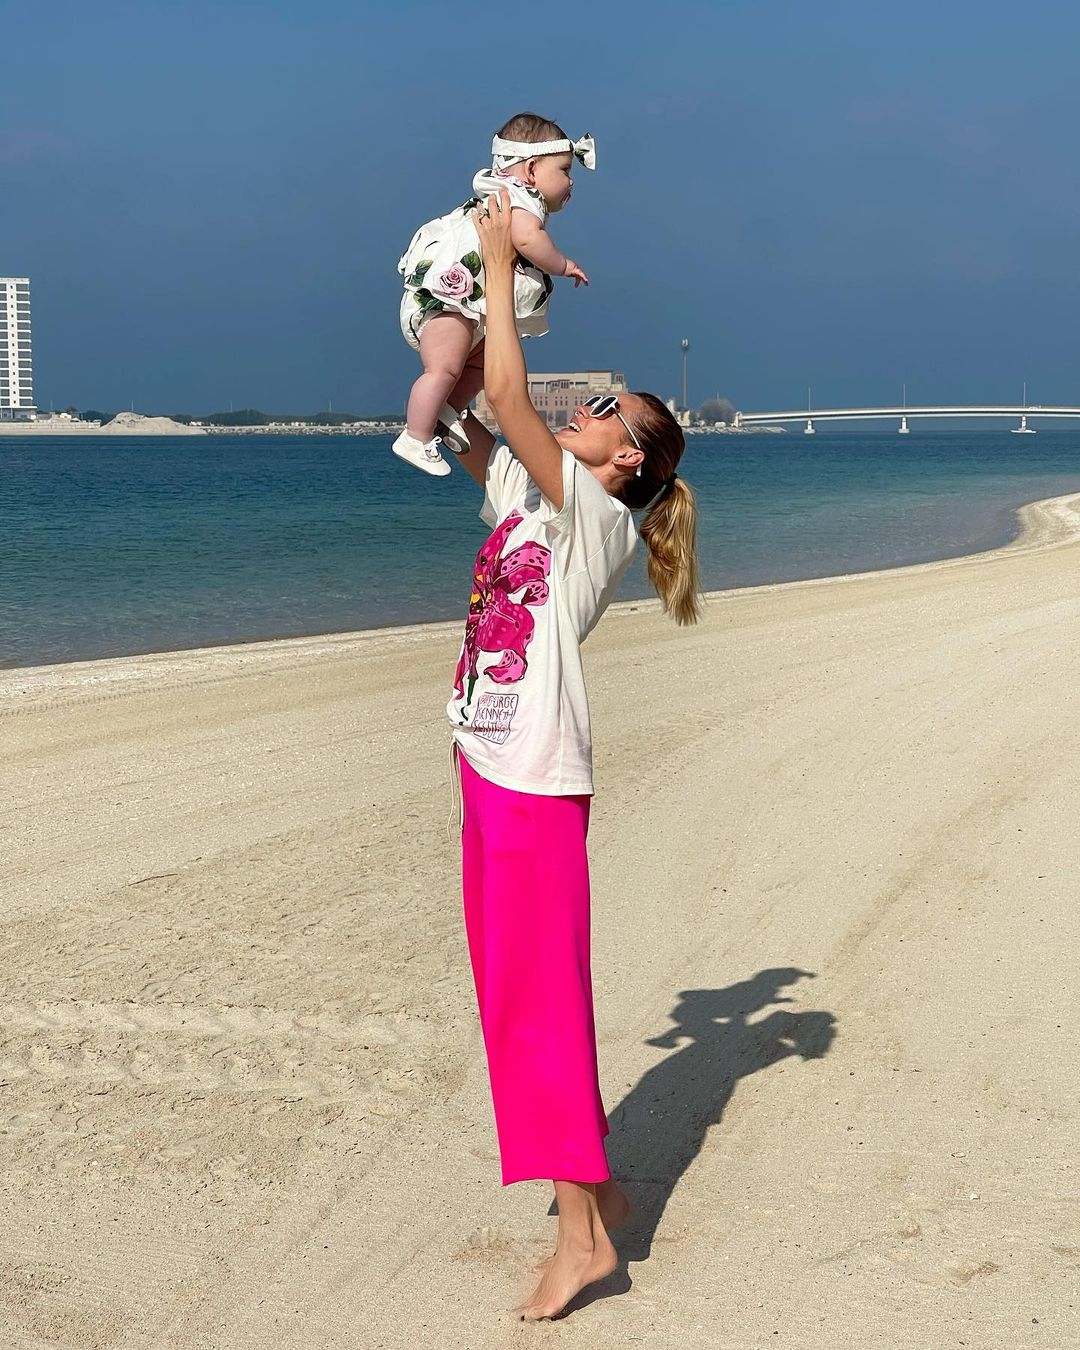 Сонячний пляж і казкові єдинороги: Анастасія Масюткіна привітала 6-місячну доньку